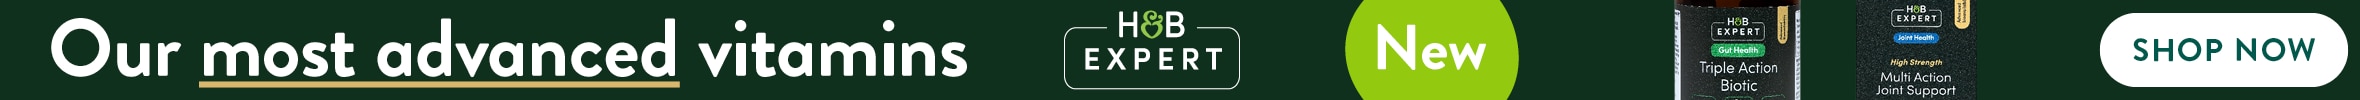 H&B Expert